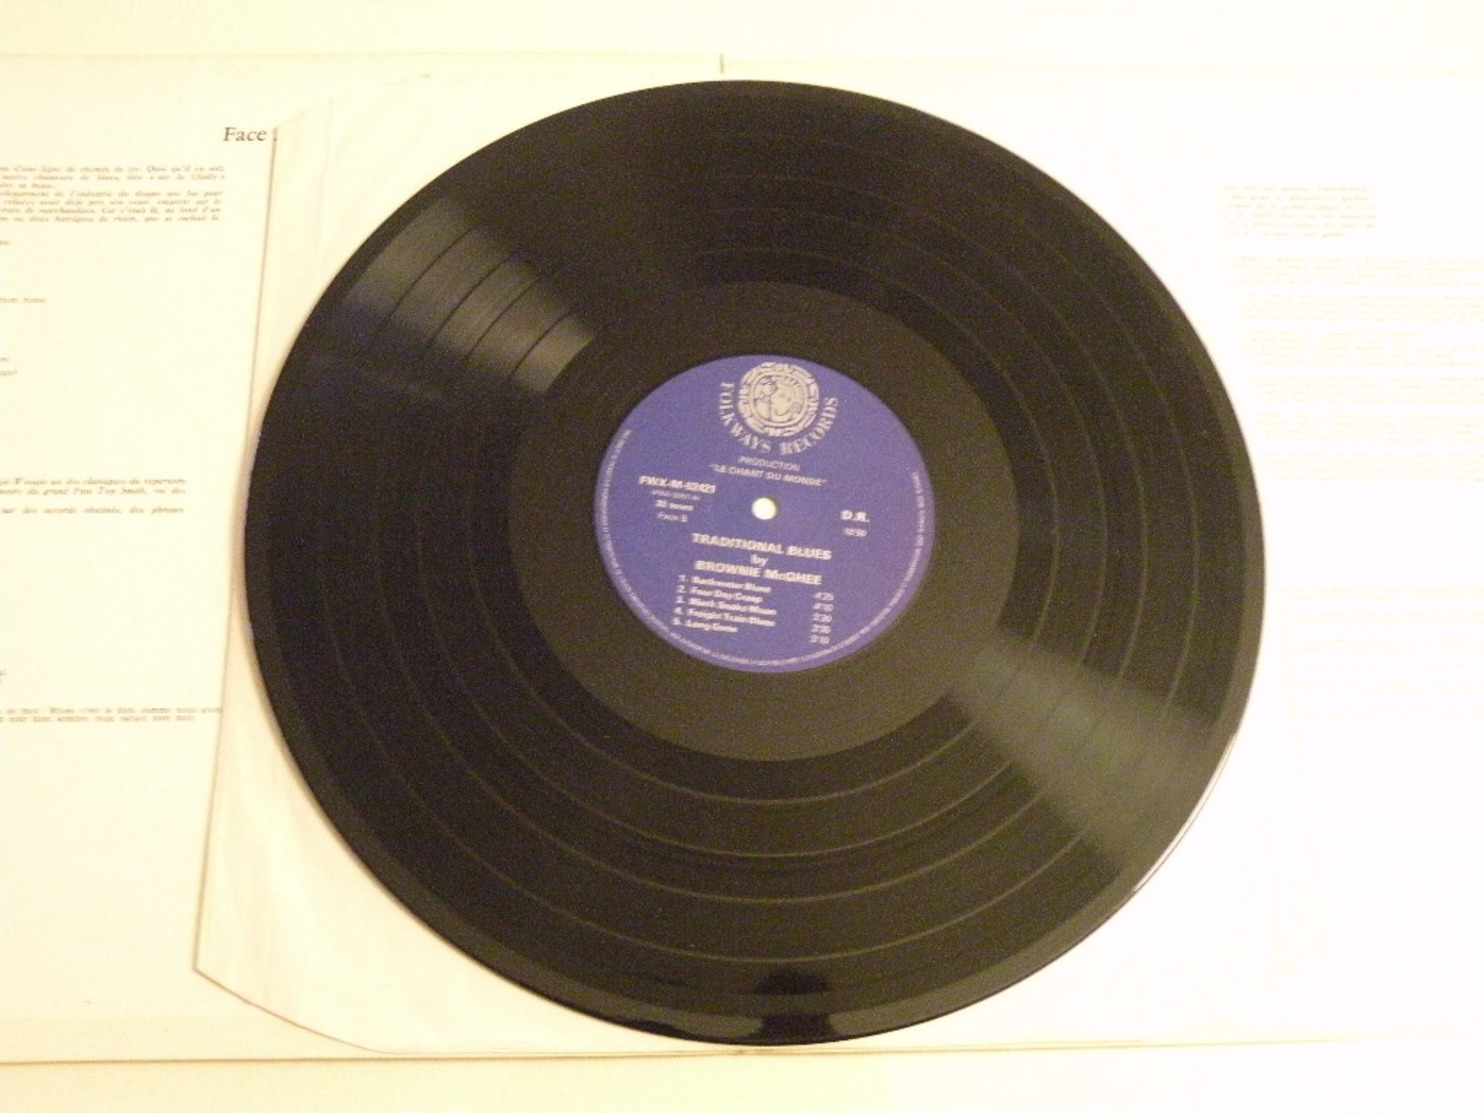 Traditional Blues By Brownie Mc Ghee - (Titres Sur Photos) - Vinyle 33 T LP (Le Chant Du Monde) - Blues